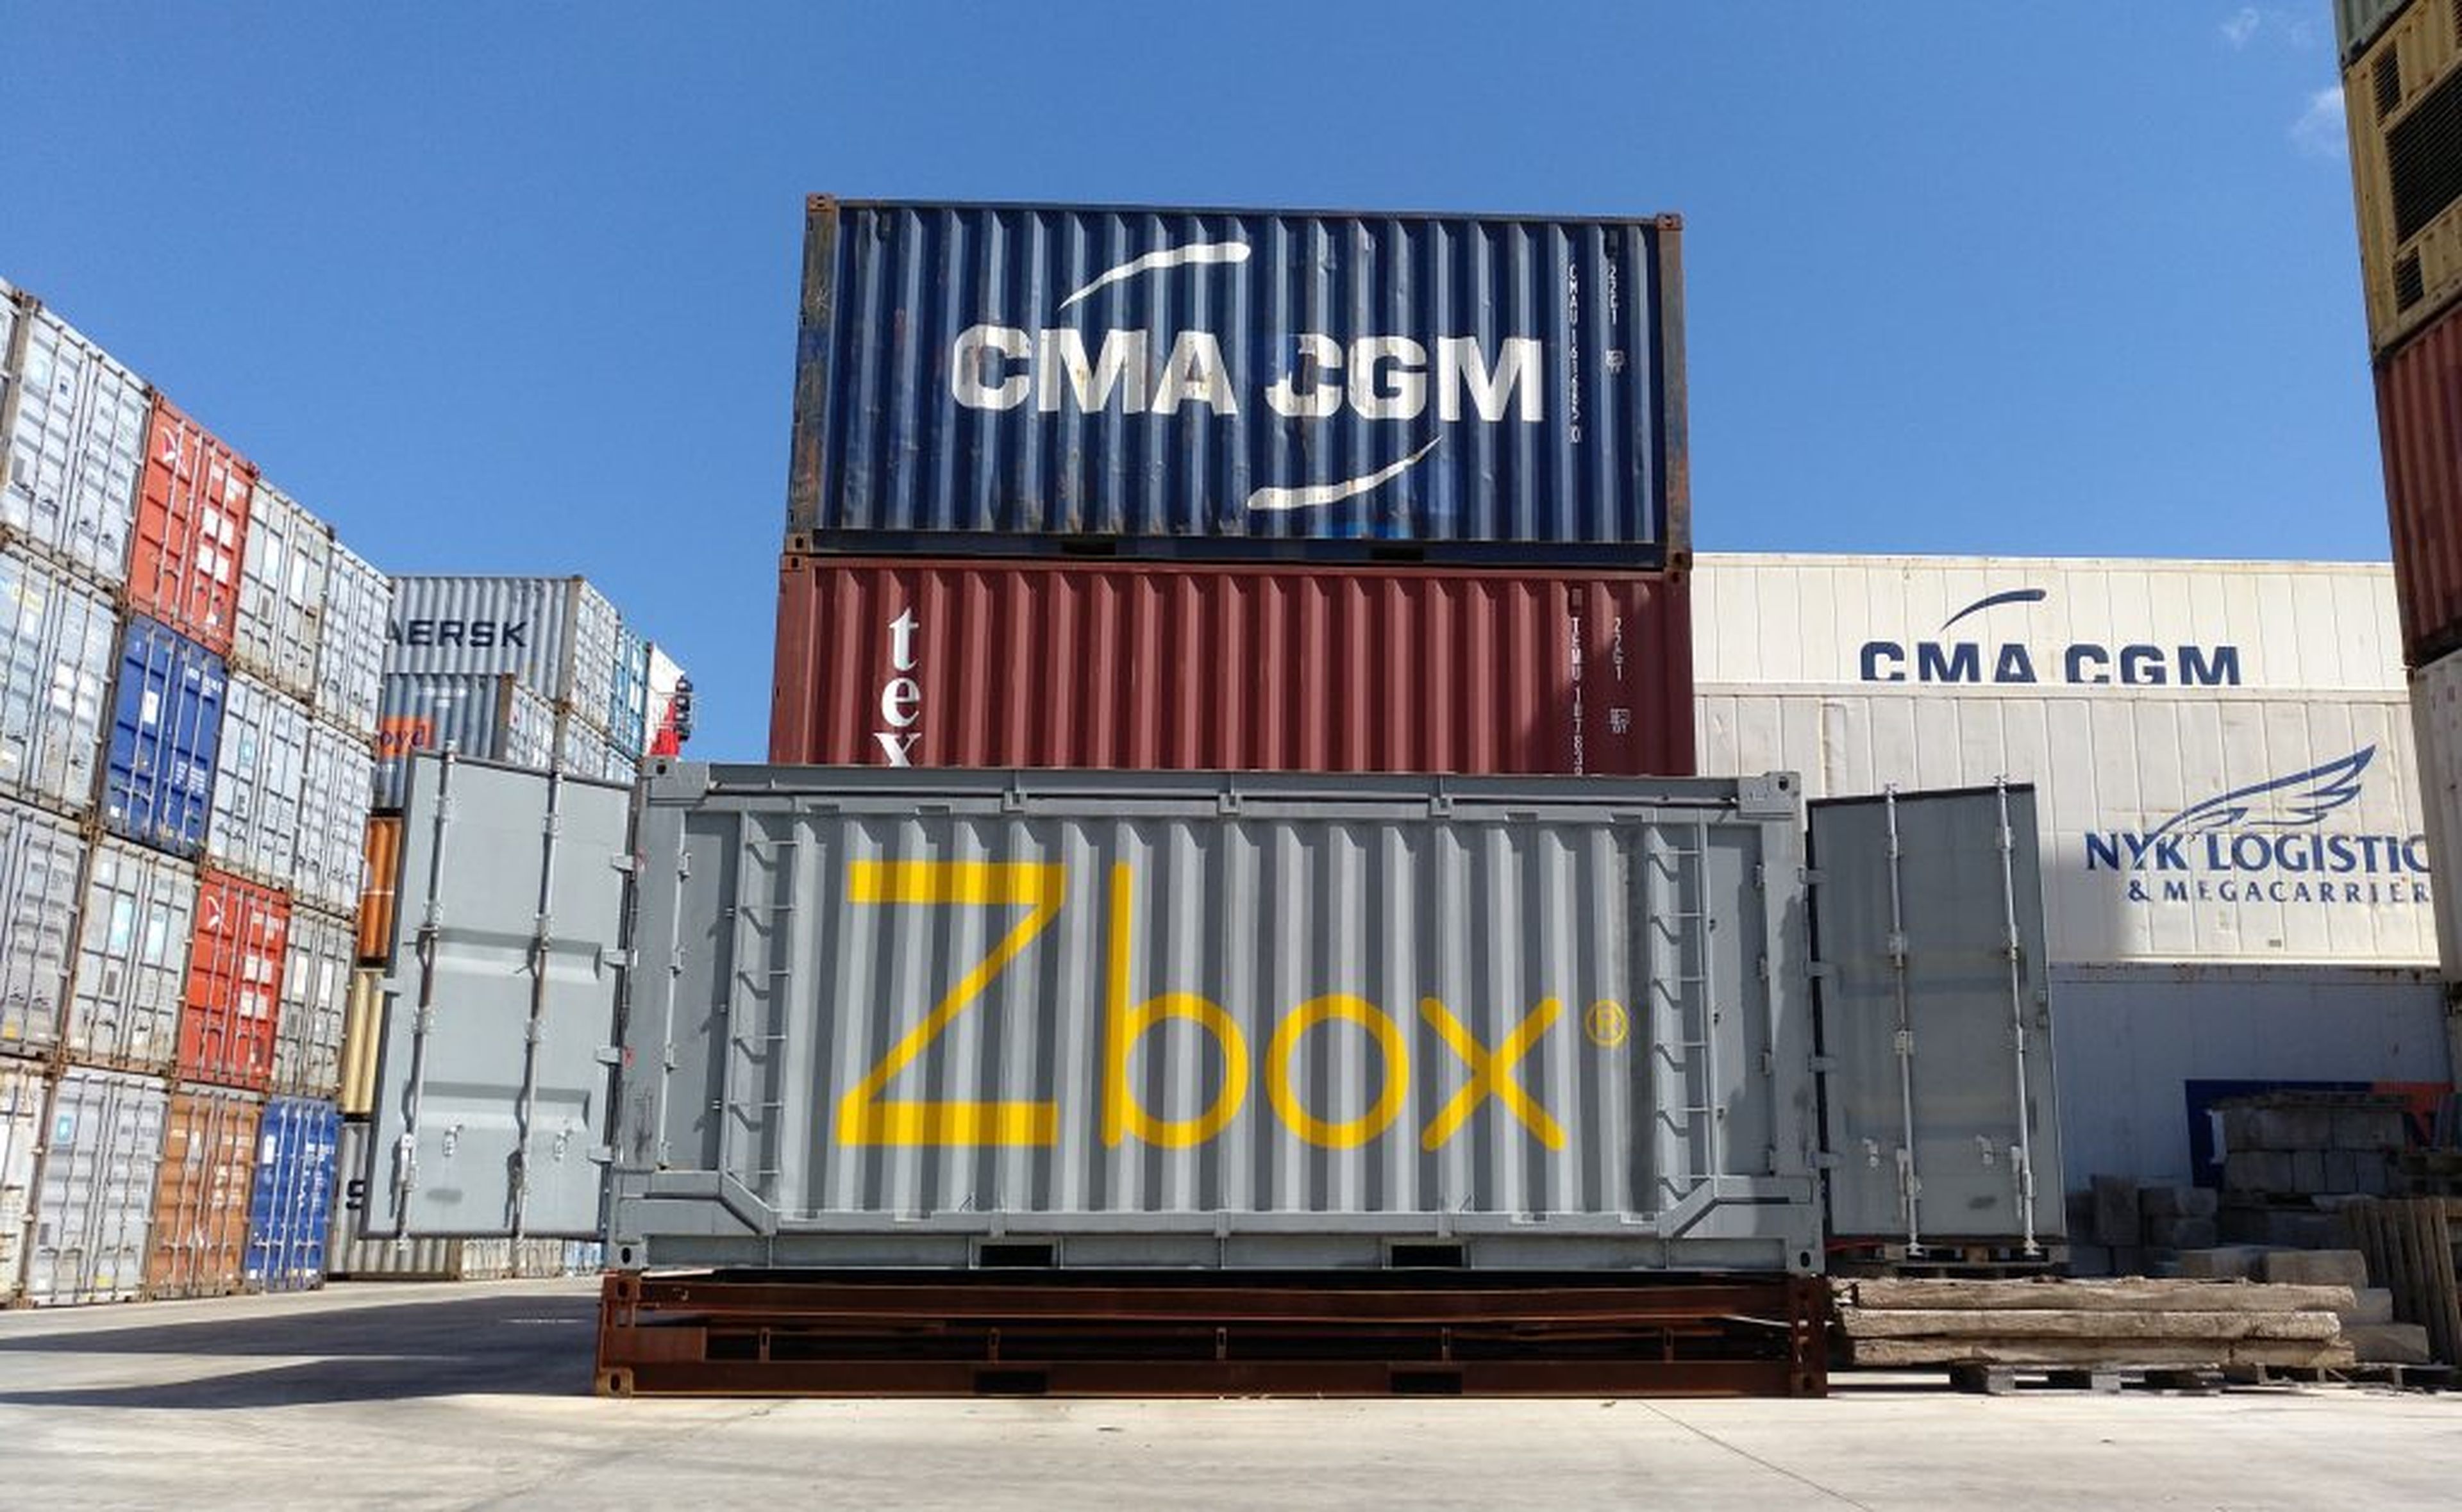 Un contenedor plegable Zbox, de Navlandis, en el área de carga de un puerto.